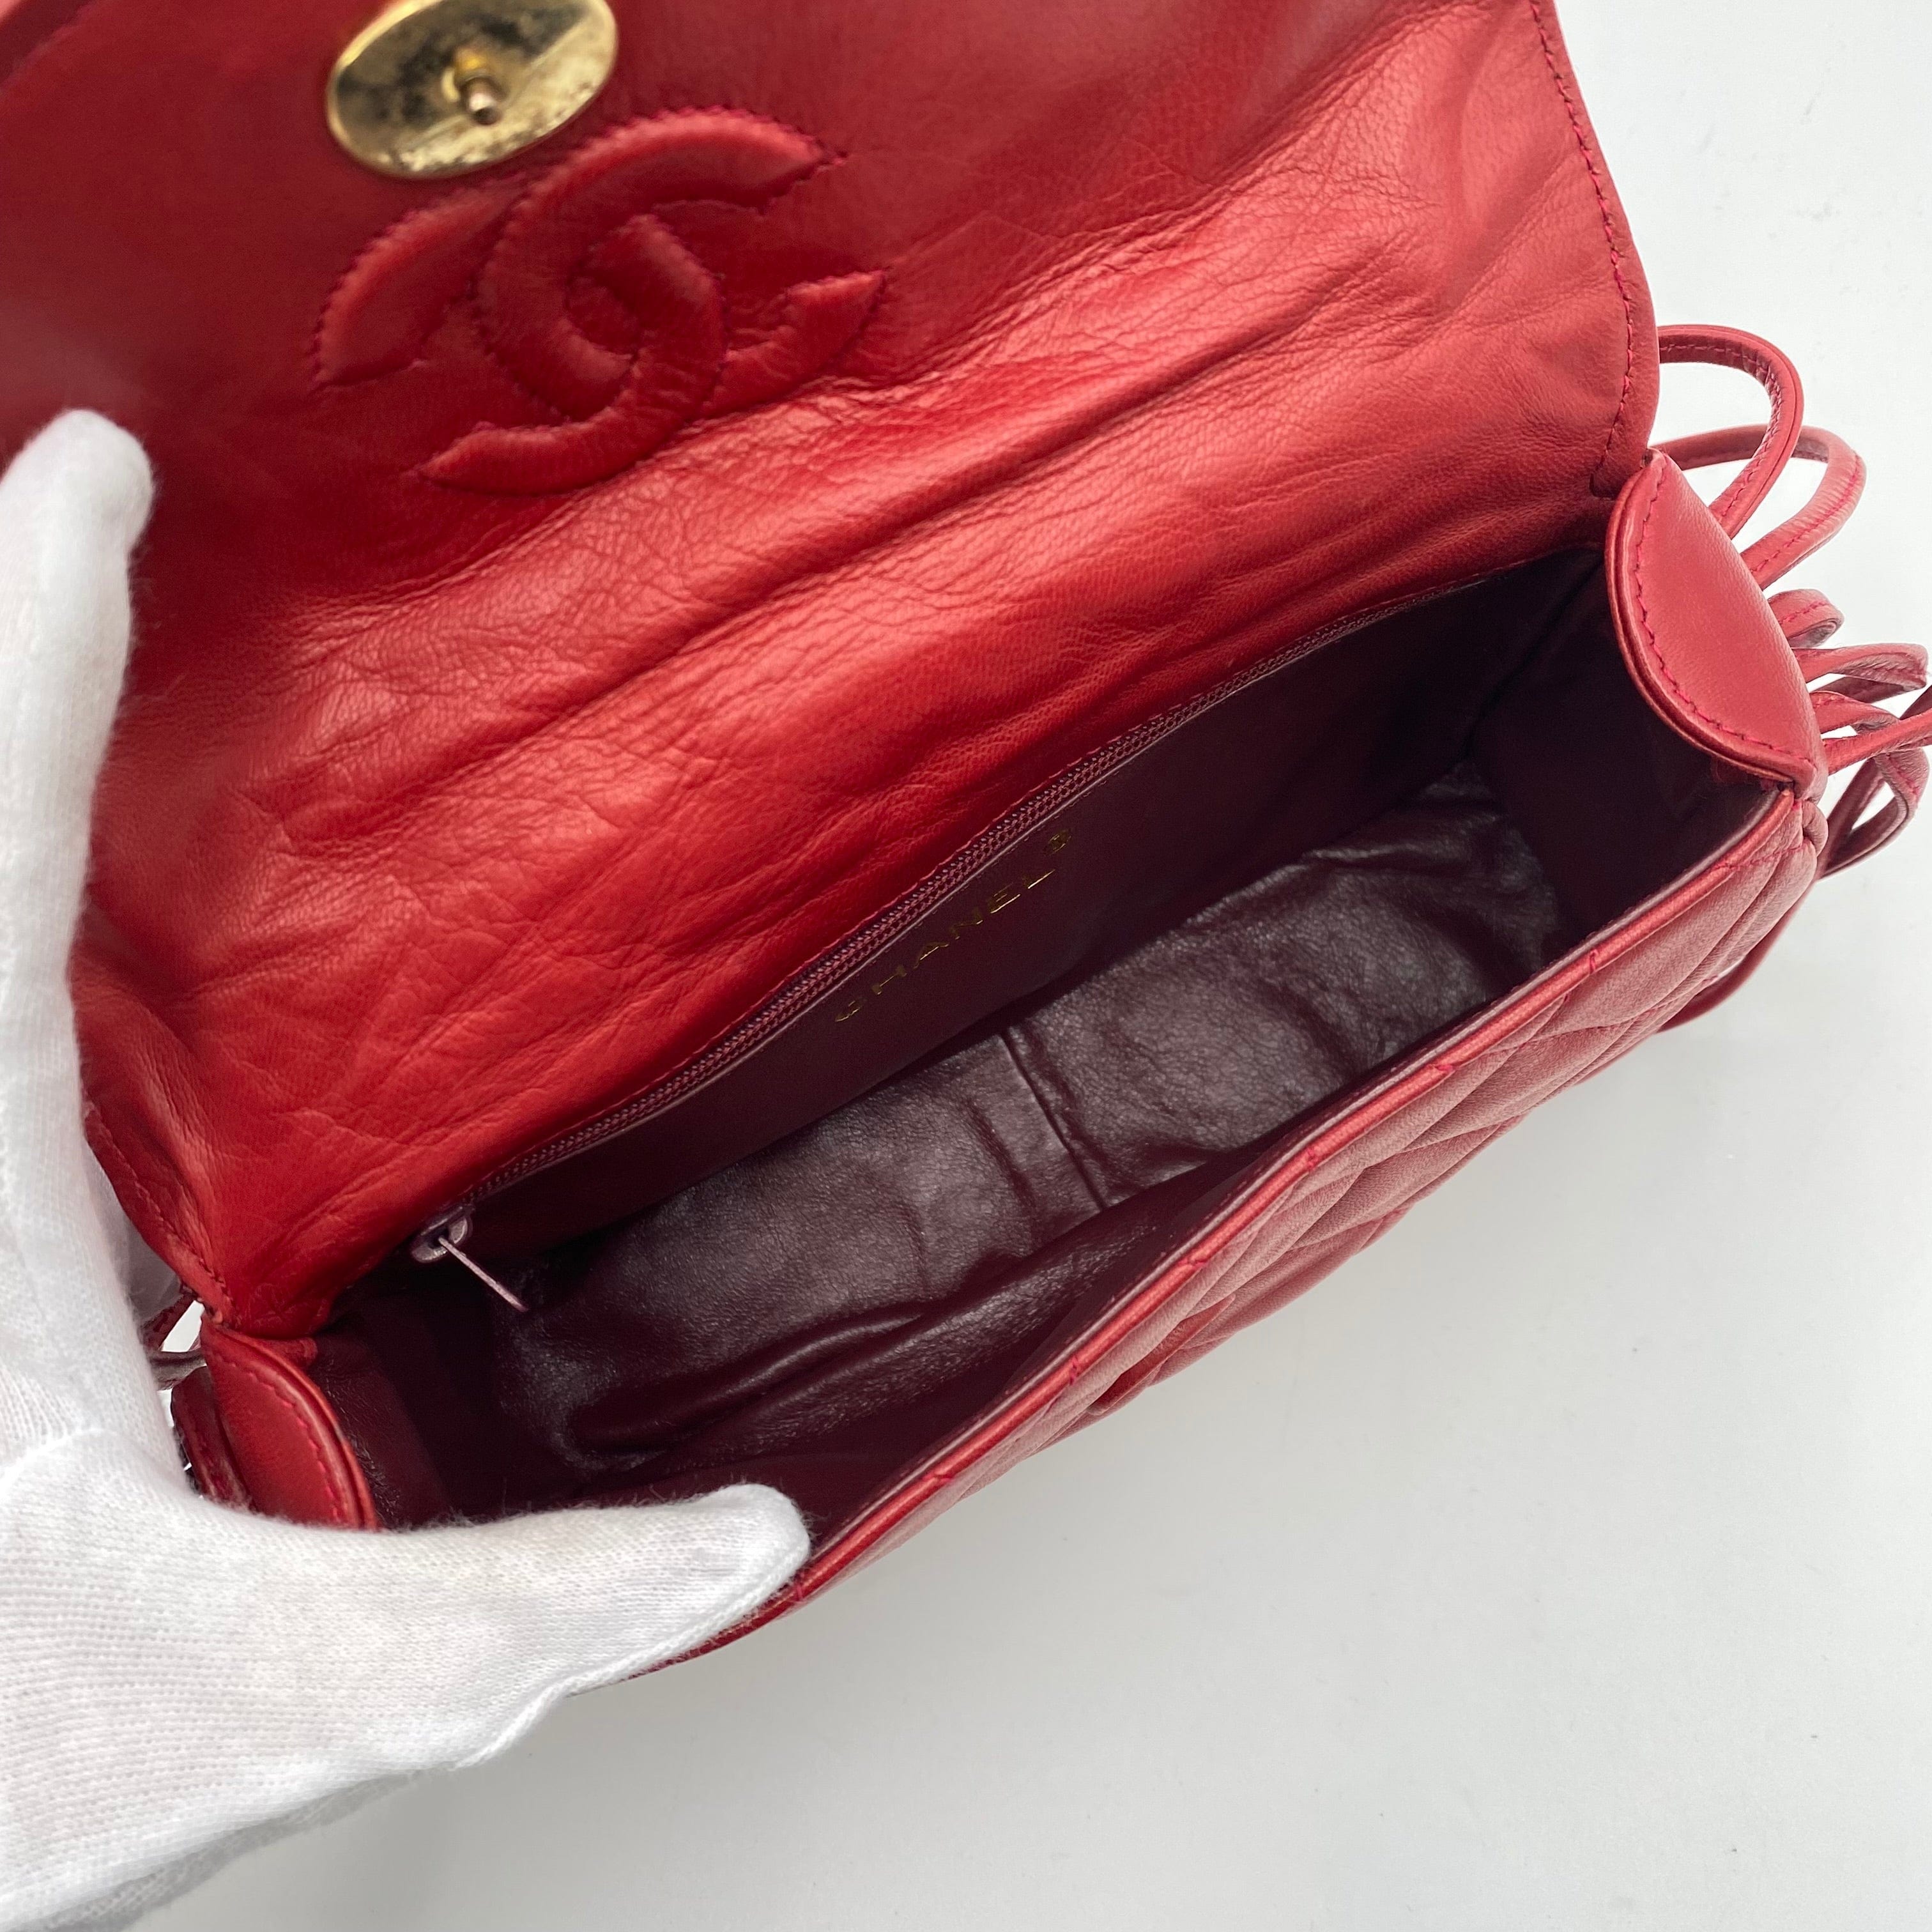 Chanel CHANEL VINTAGE SHOULDER BAG RED LAMB SKIN 90223315